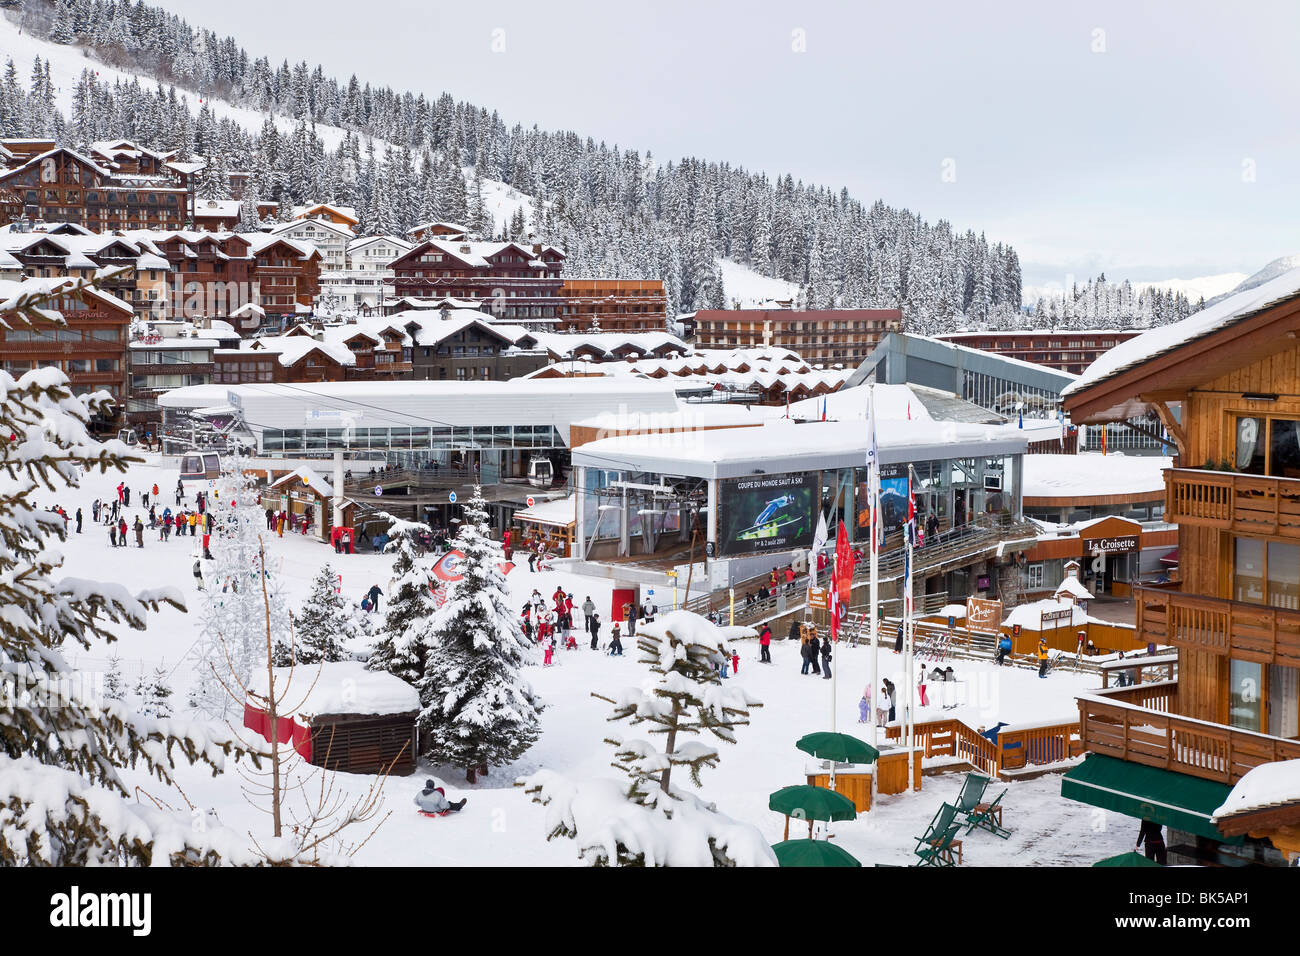 Courchevel 1850 station de ski dans les Trois Vallées (Les Trois Vallées), Savoie, Alpes, France, Europe Banque D'Images